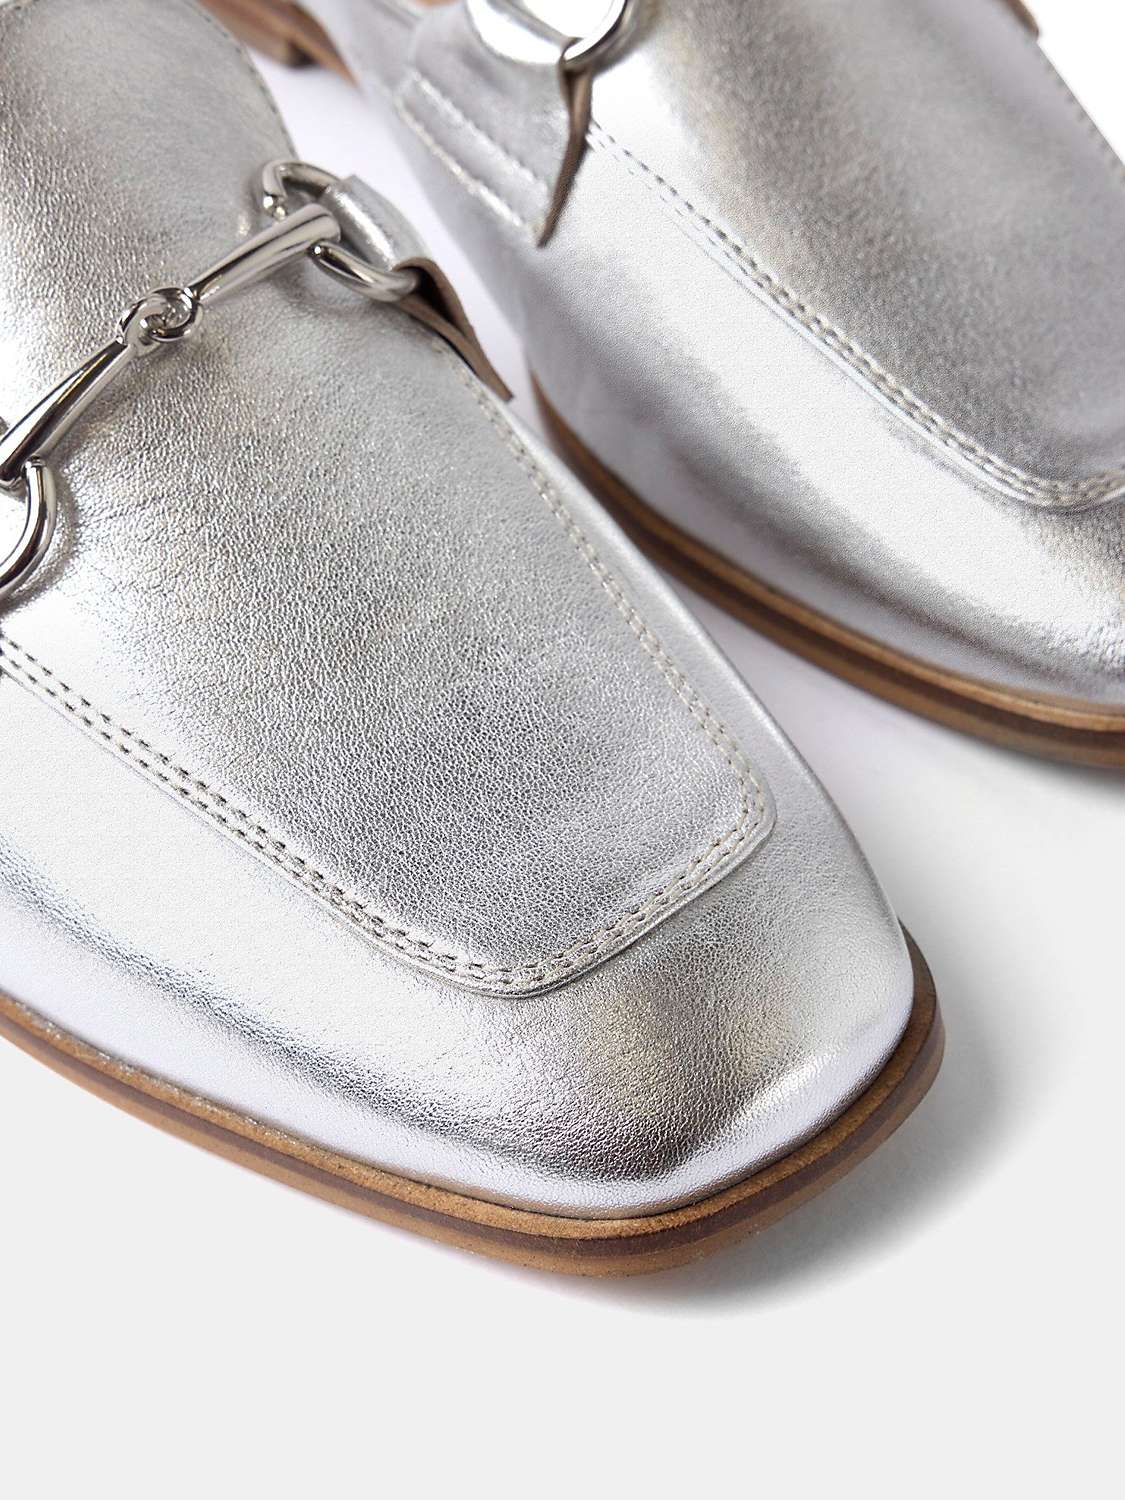 Buy Mint Velvet Leather Loafer Shoes Online at johnlewis.com